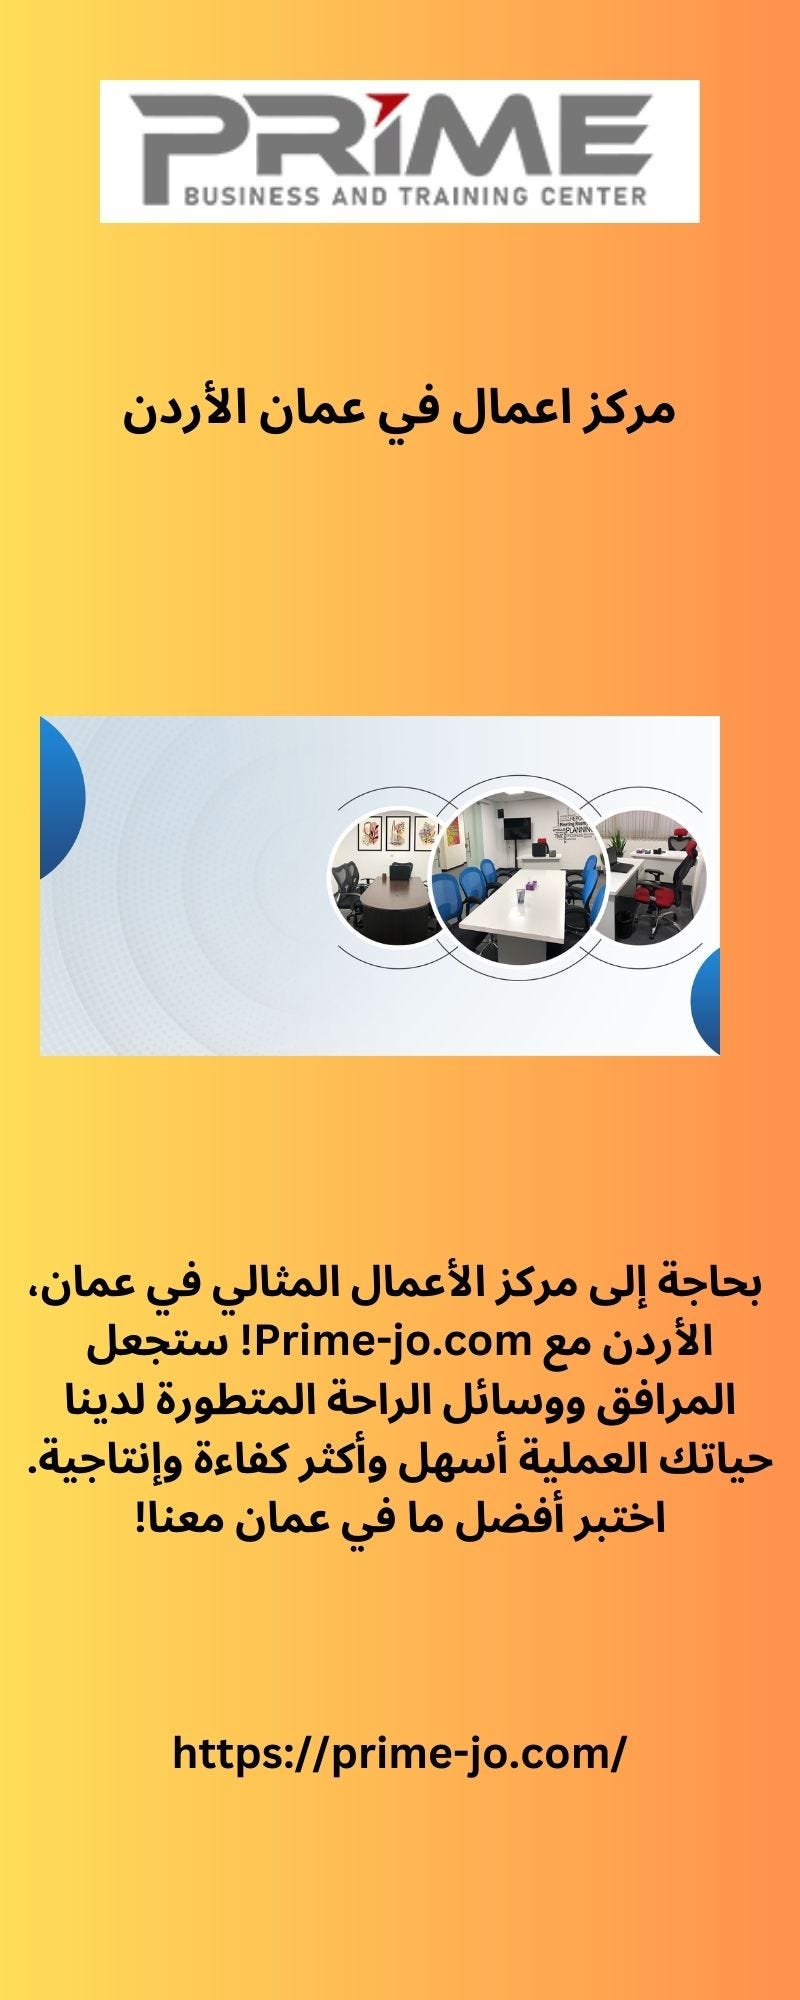 باقات المكاتب الافتراضية في عمان الأردن - Primebusiness - Medium